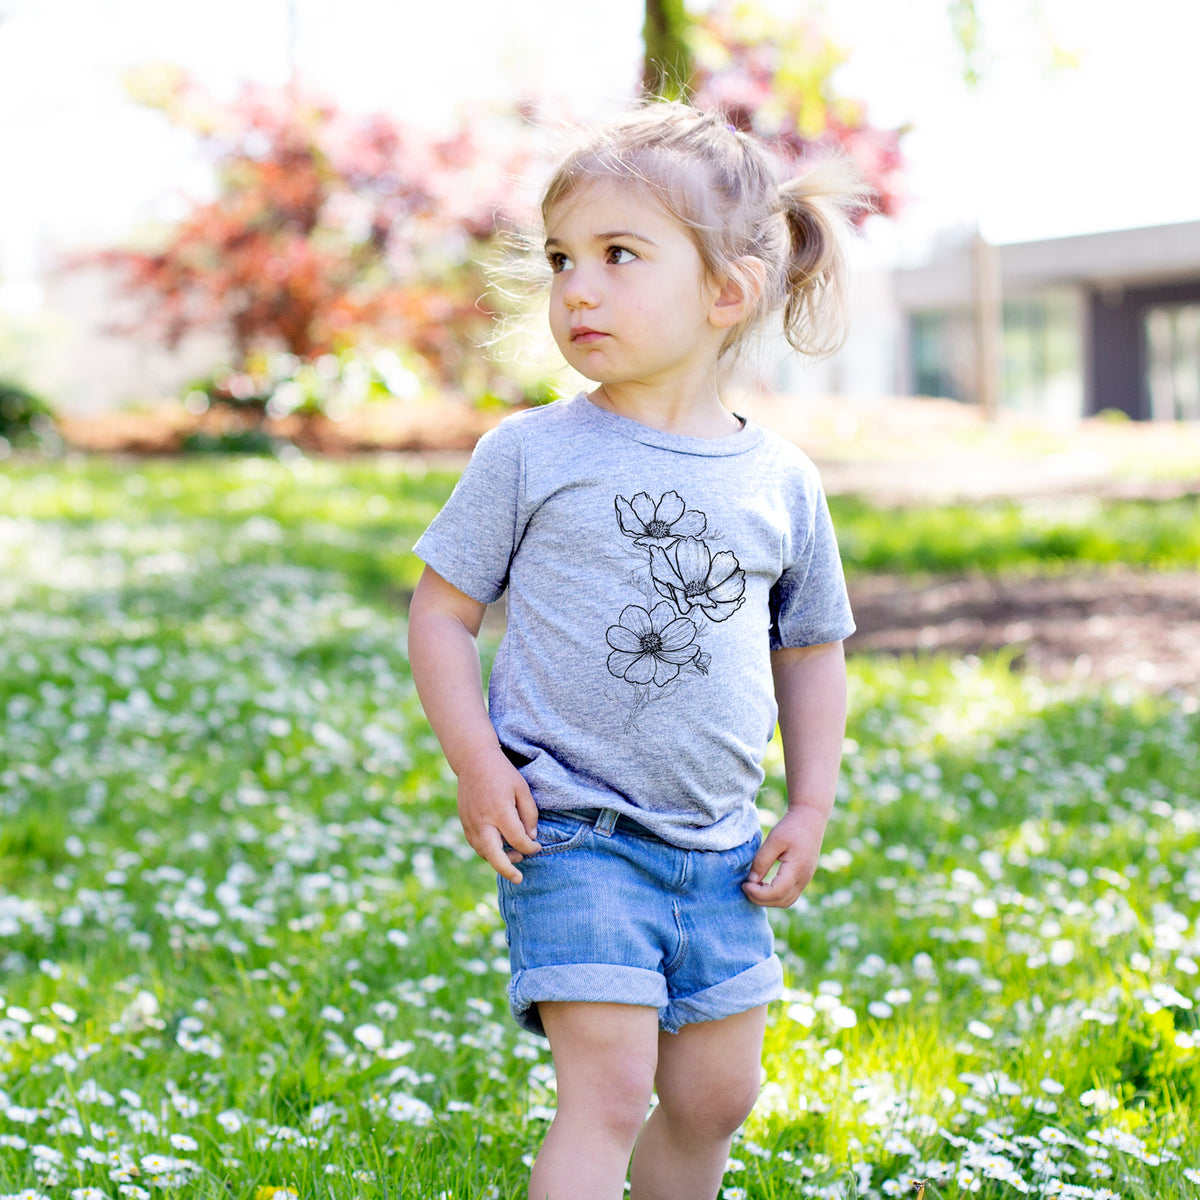 Garden Cosmos - Apollo White Cosmos bipinnatus - Kids Shirt